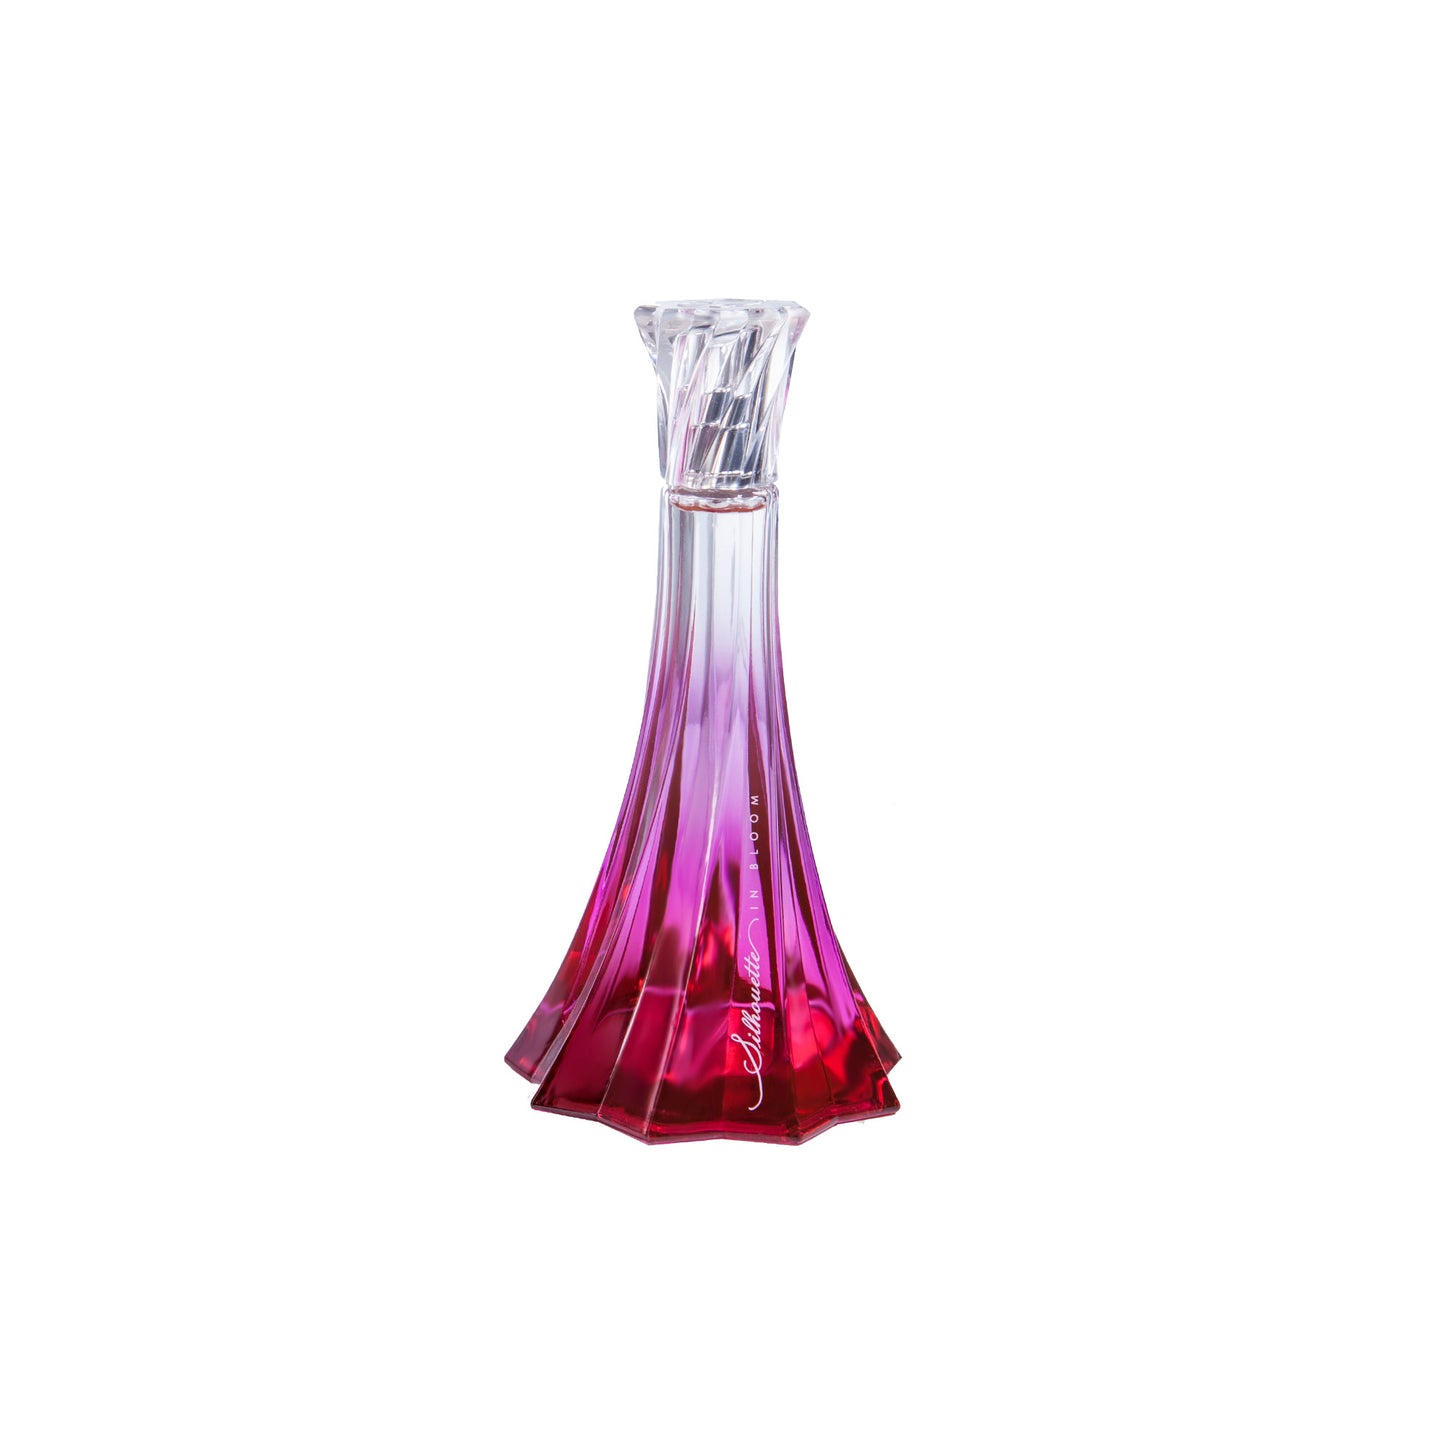 Silhouette in Bloom 2ml Sample Vial - Eau de Parfum